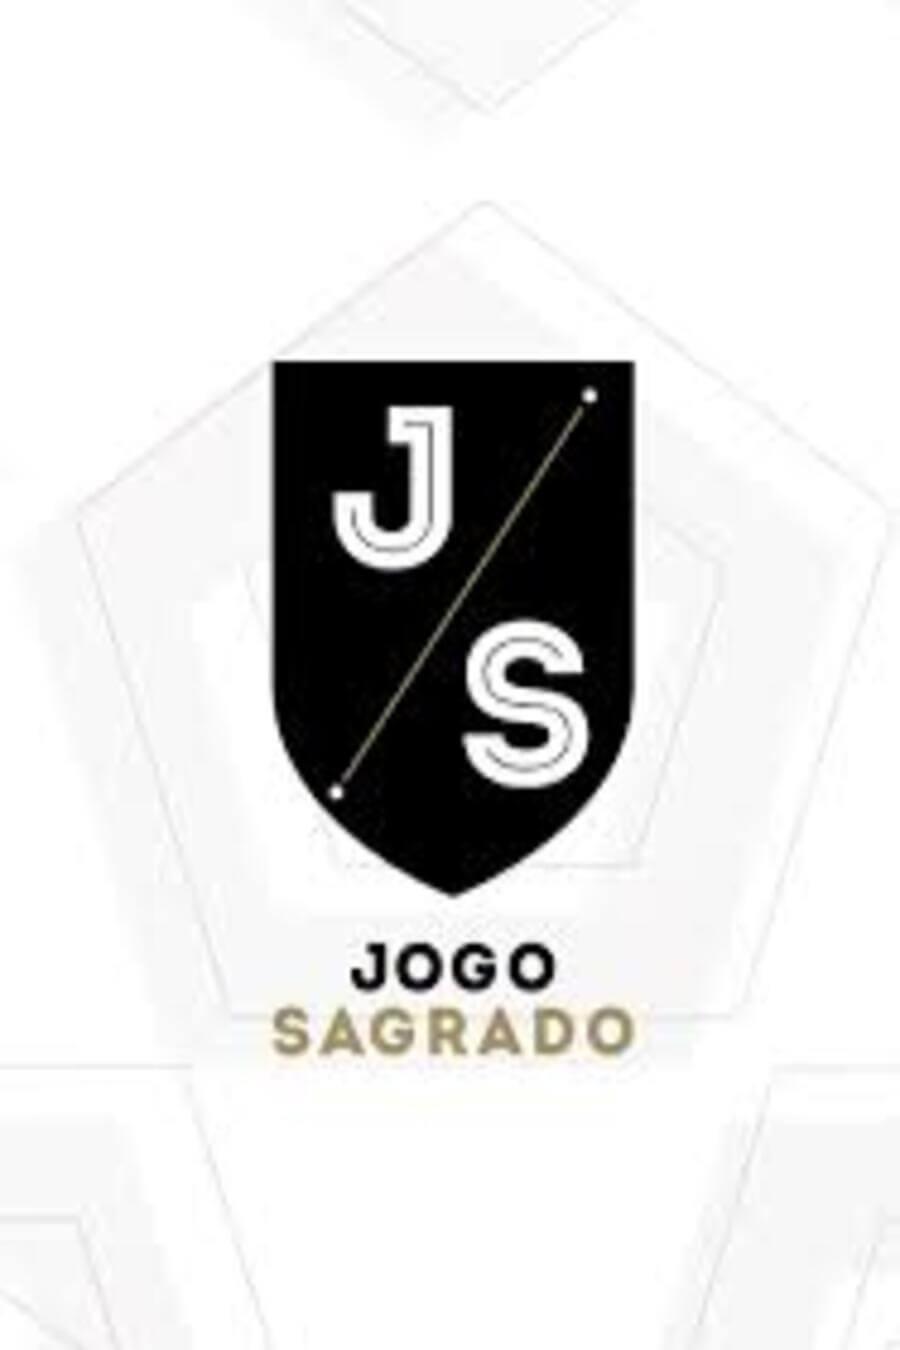 TV ratings for Jogo Sagrado in Thailand. Fox Sports Brasil TV series